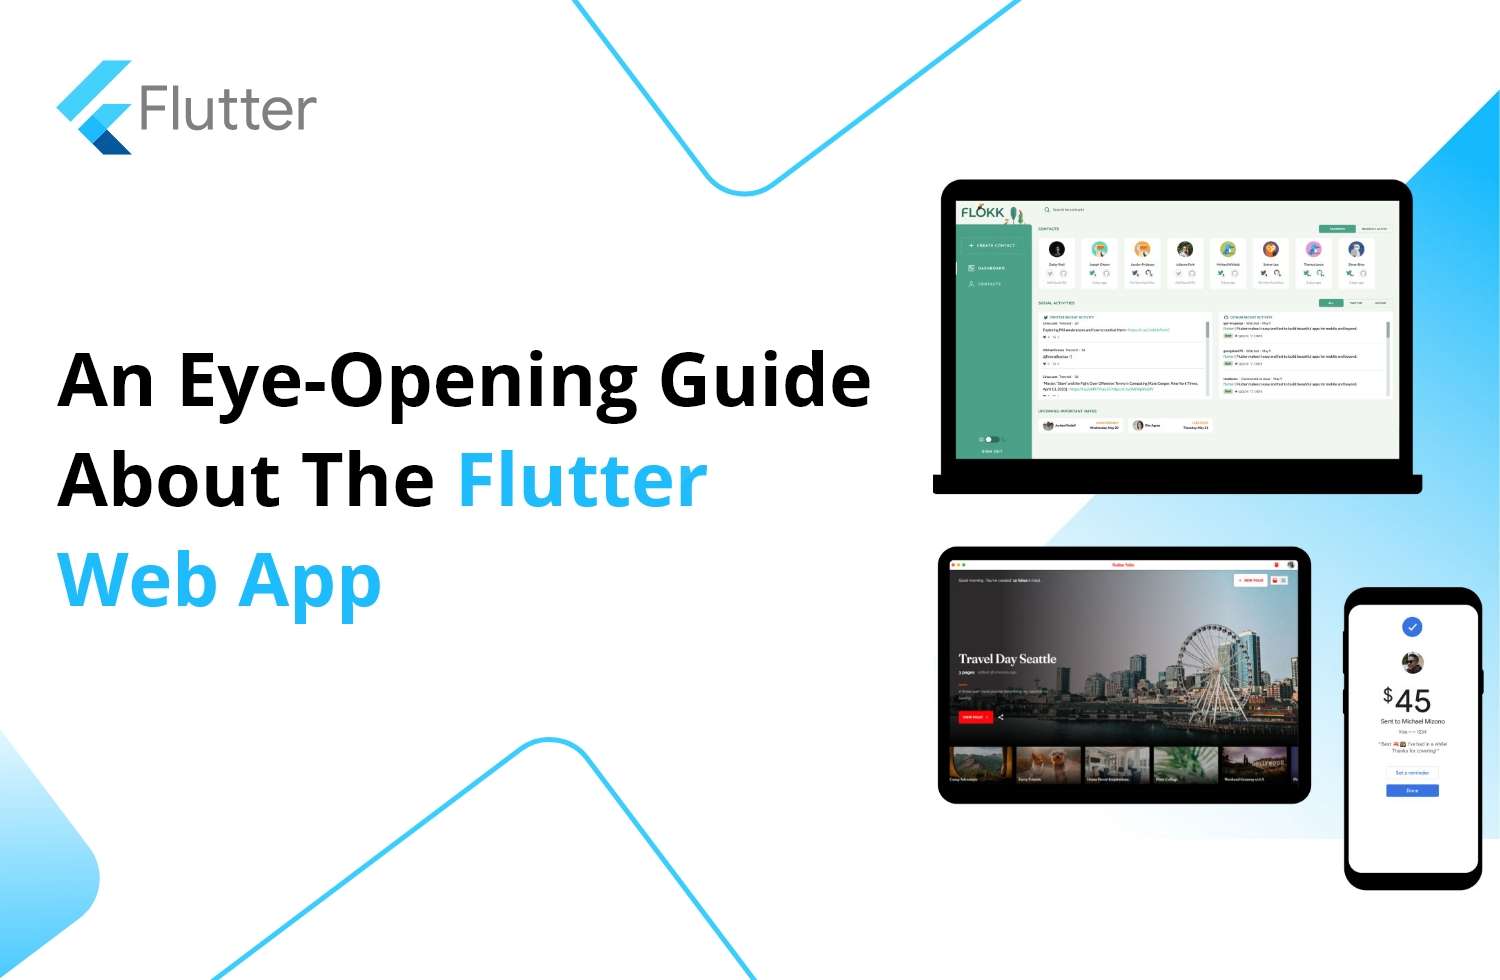 flutter web app development